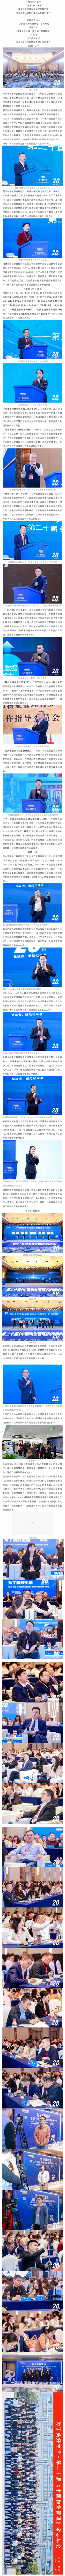 为了美好生活——第二十届《中国物业管理》杂志年会在厦门市举办_壹伴长图1.jpg